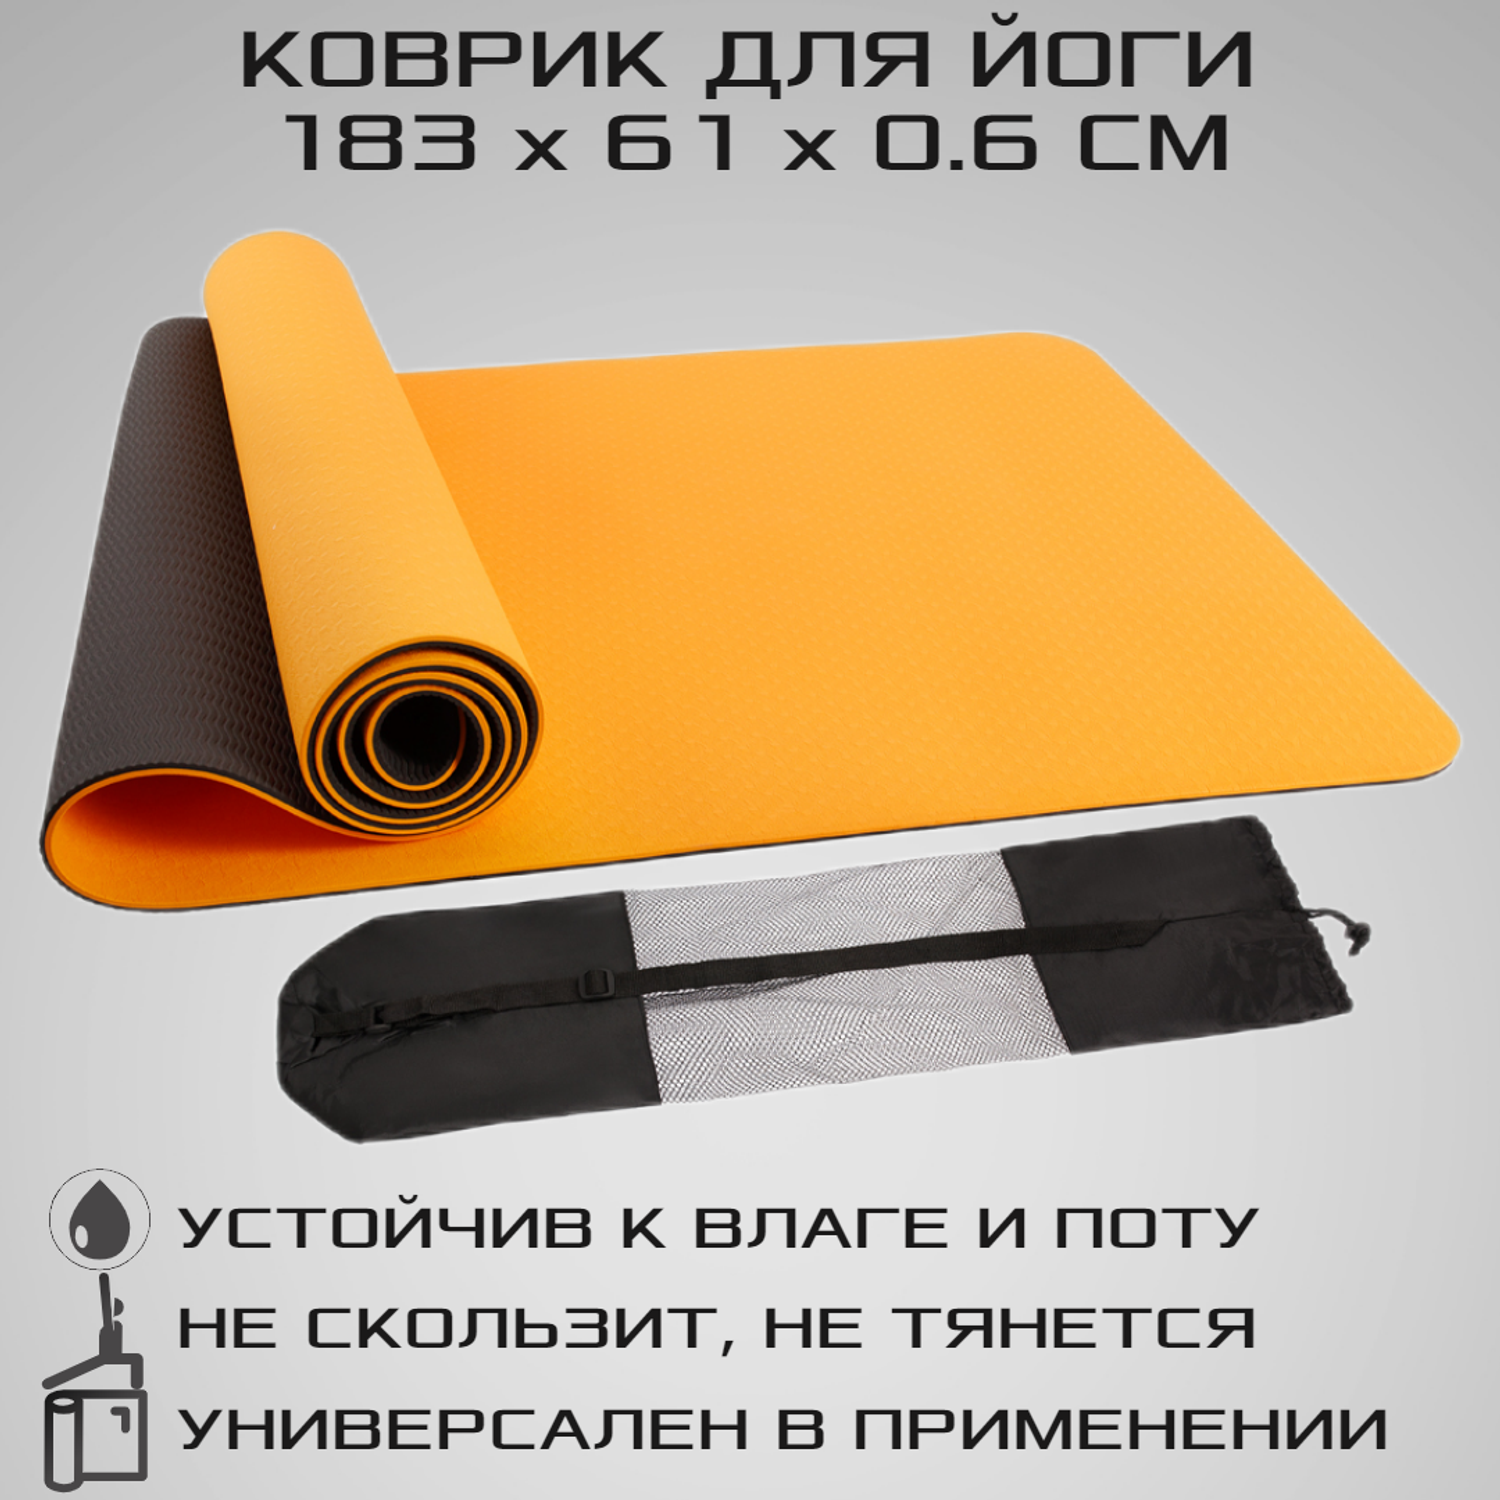 Коврик для йоги STRONG BODY двухсторонний. черно-оранжевый 183см х 61см х 0.6см - фото 1